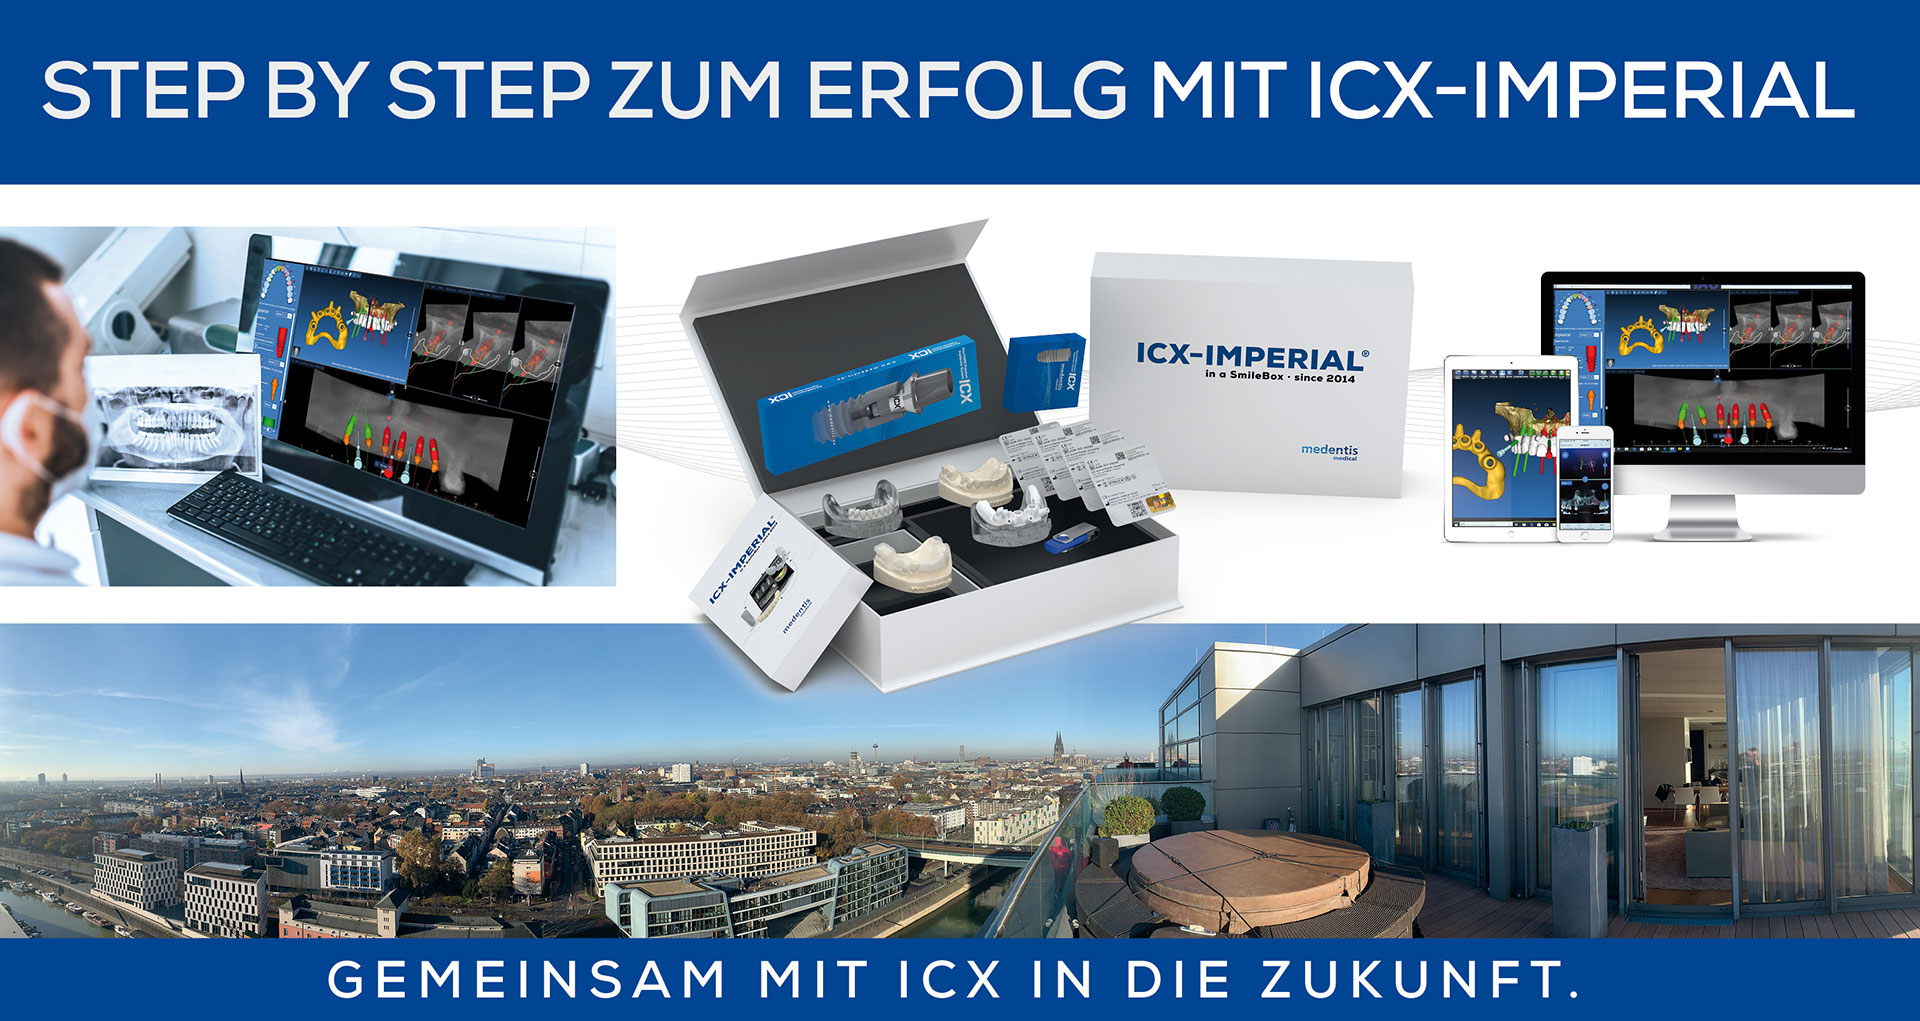 Step by step zum Erfolg mit ICX-IMPERIAL